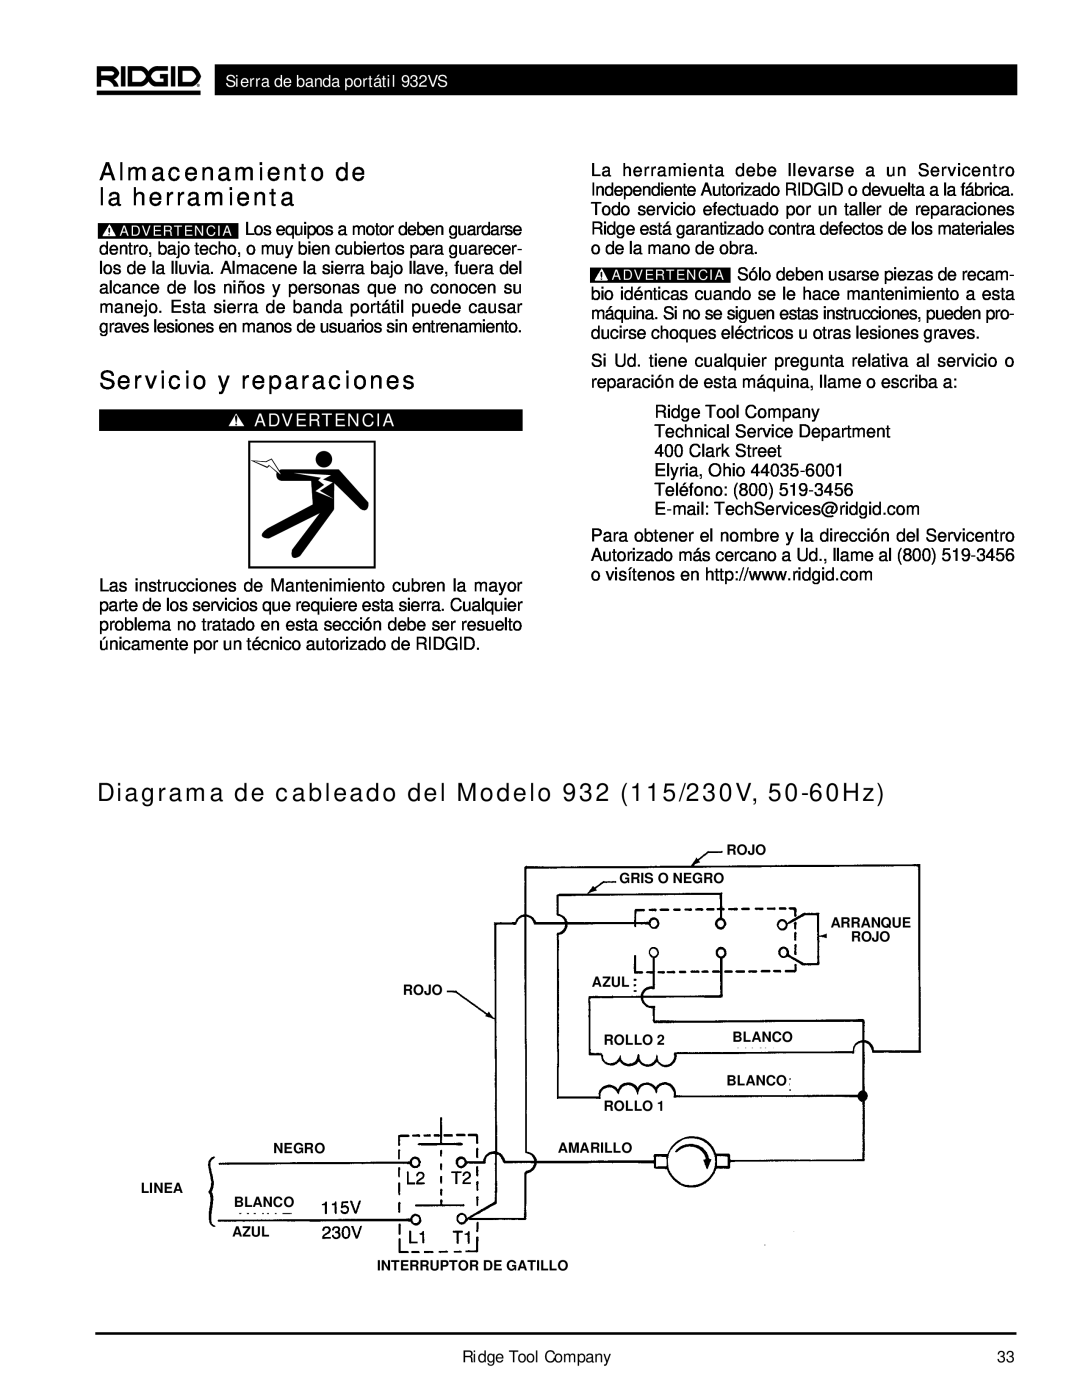 RIDGID manual Almacenamiento de la herramienta, Servicio y reparaciones, Sierra de banda portátil 932VS, Advertencia 